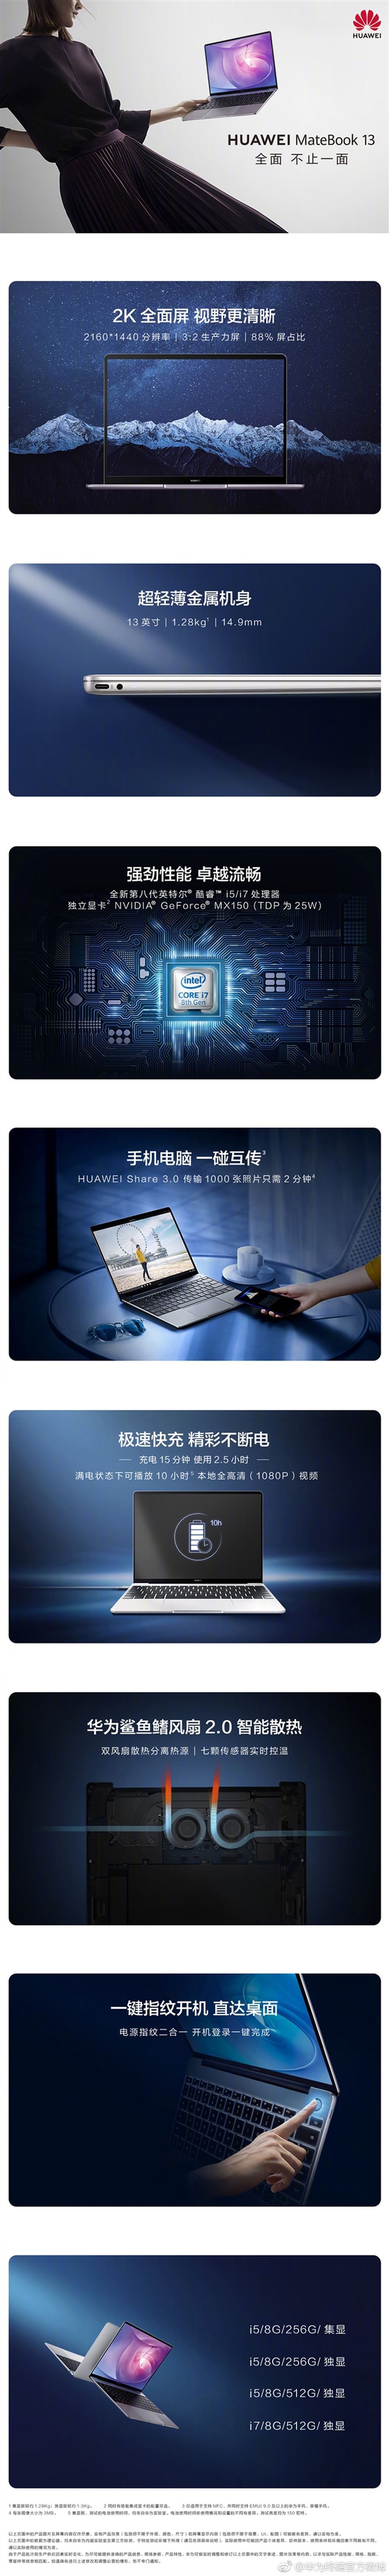 Huawei Matebook có thêm phiên bản 13 inch, giá từ 725 USD ảnh 5